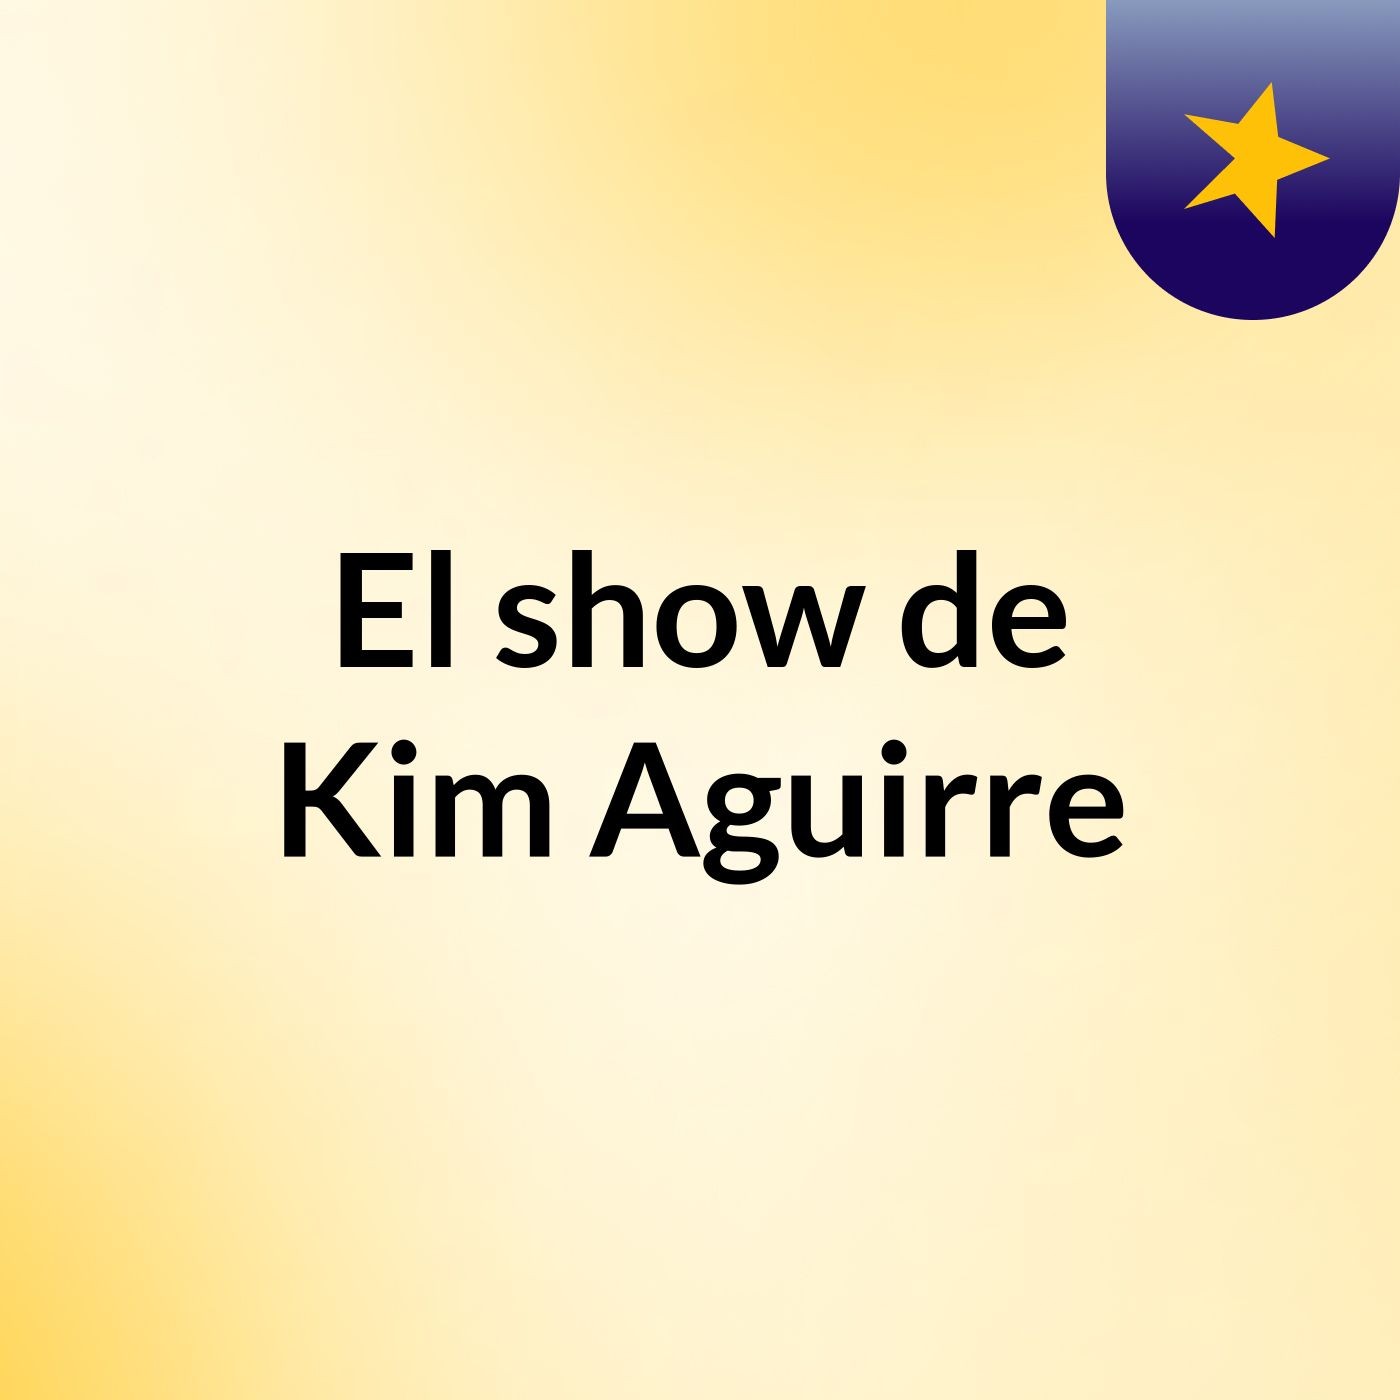 El show de Kim Aguirre